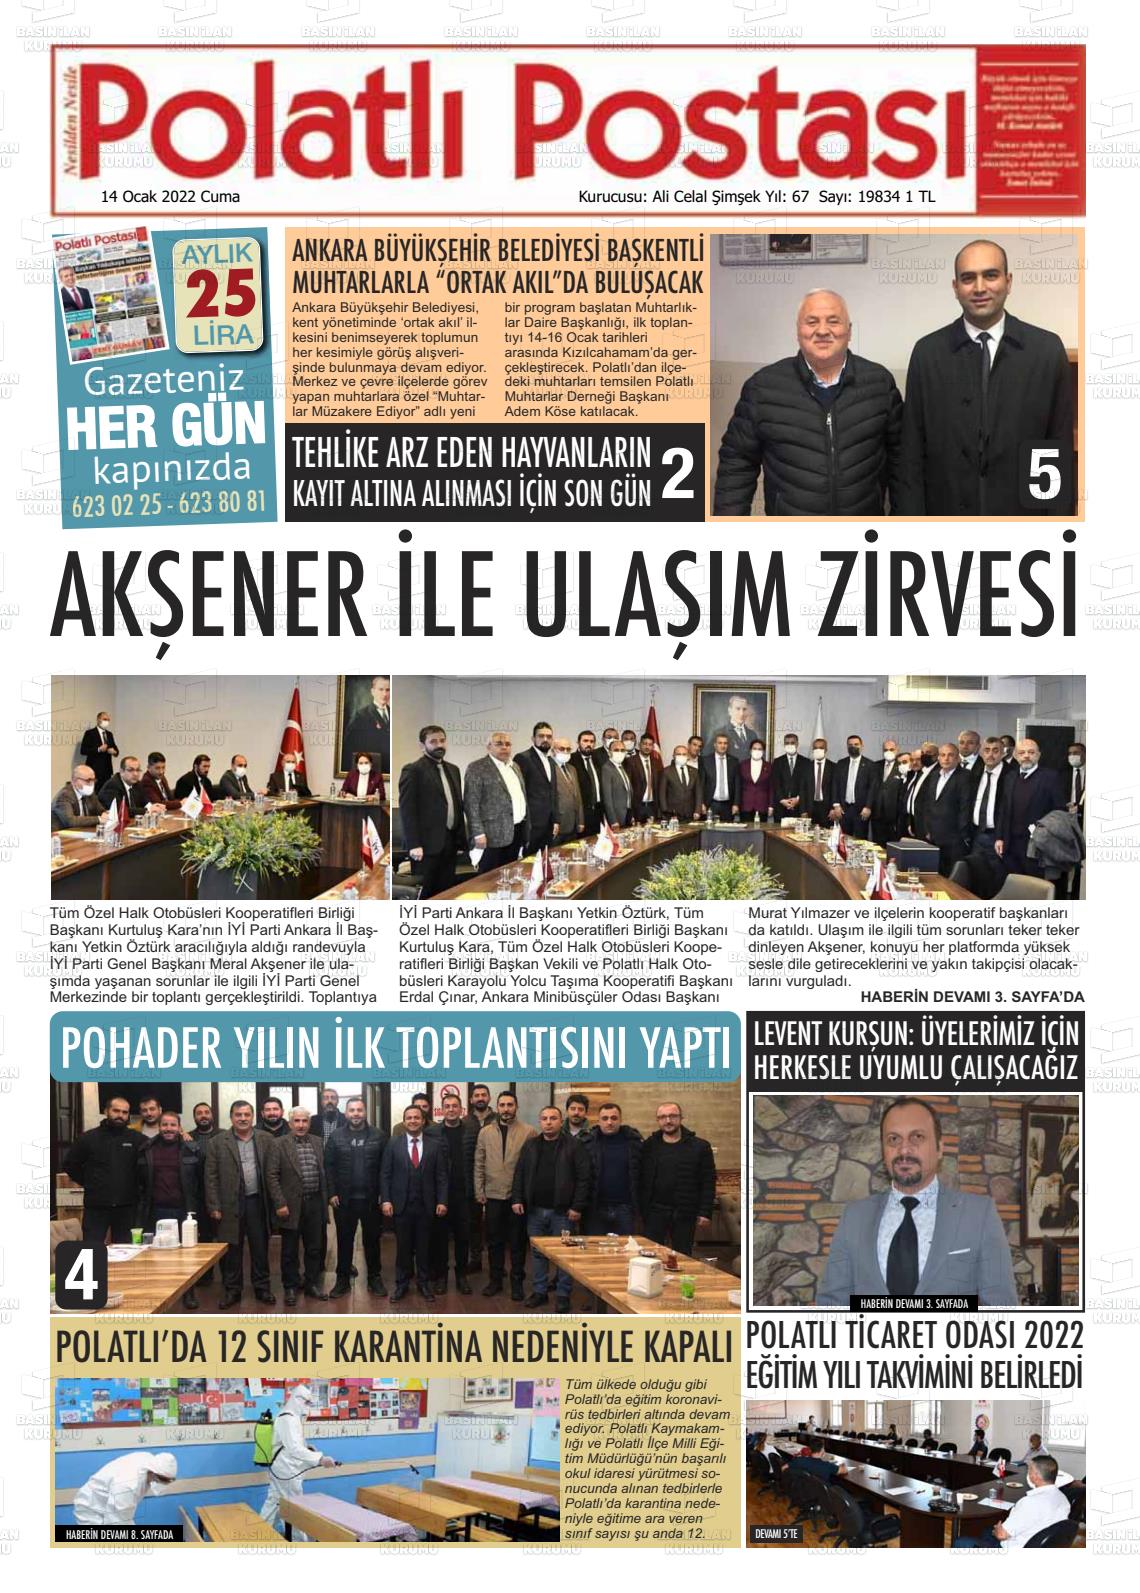 14 Ocak 2022 Polatlı Postası Gazete Manşeti